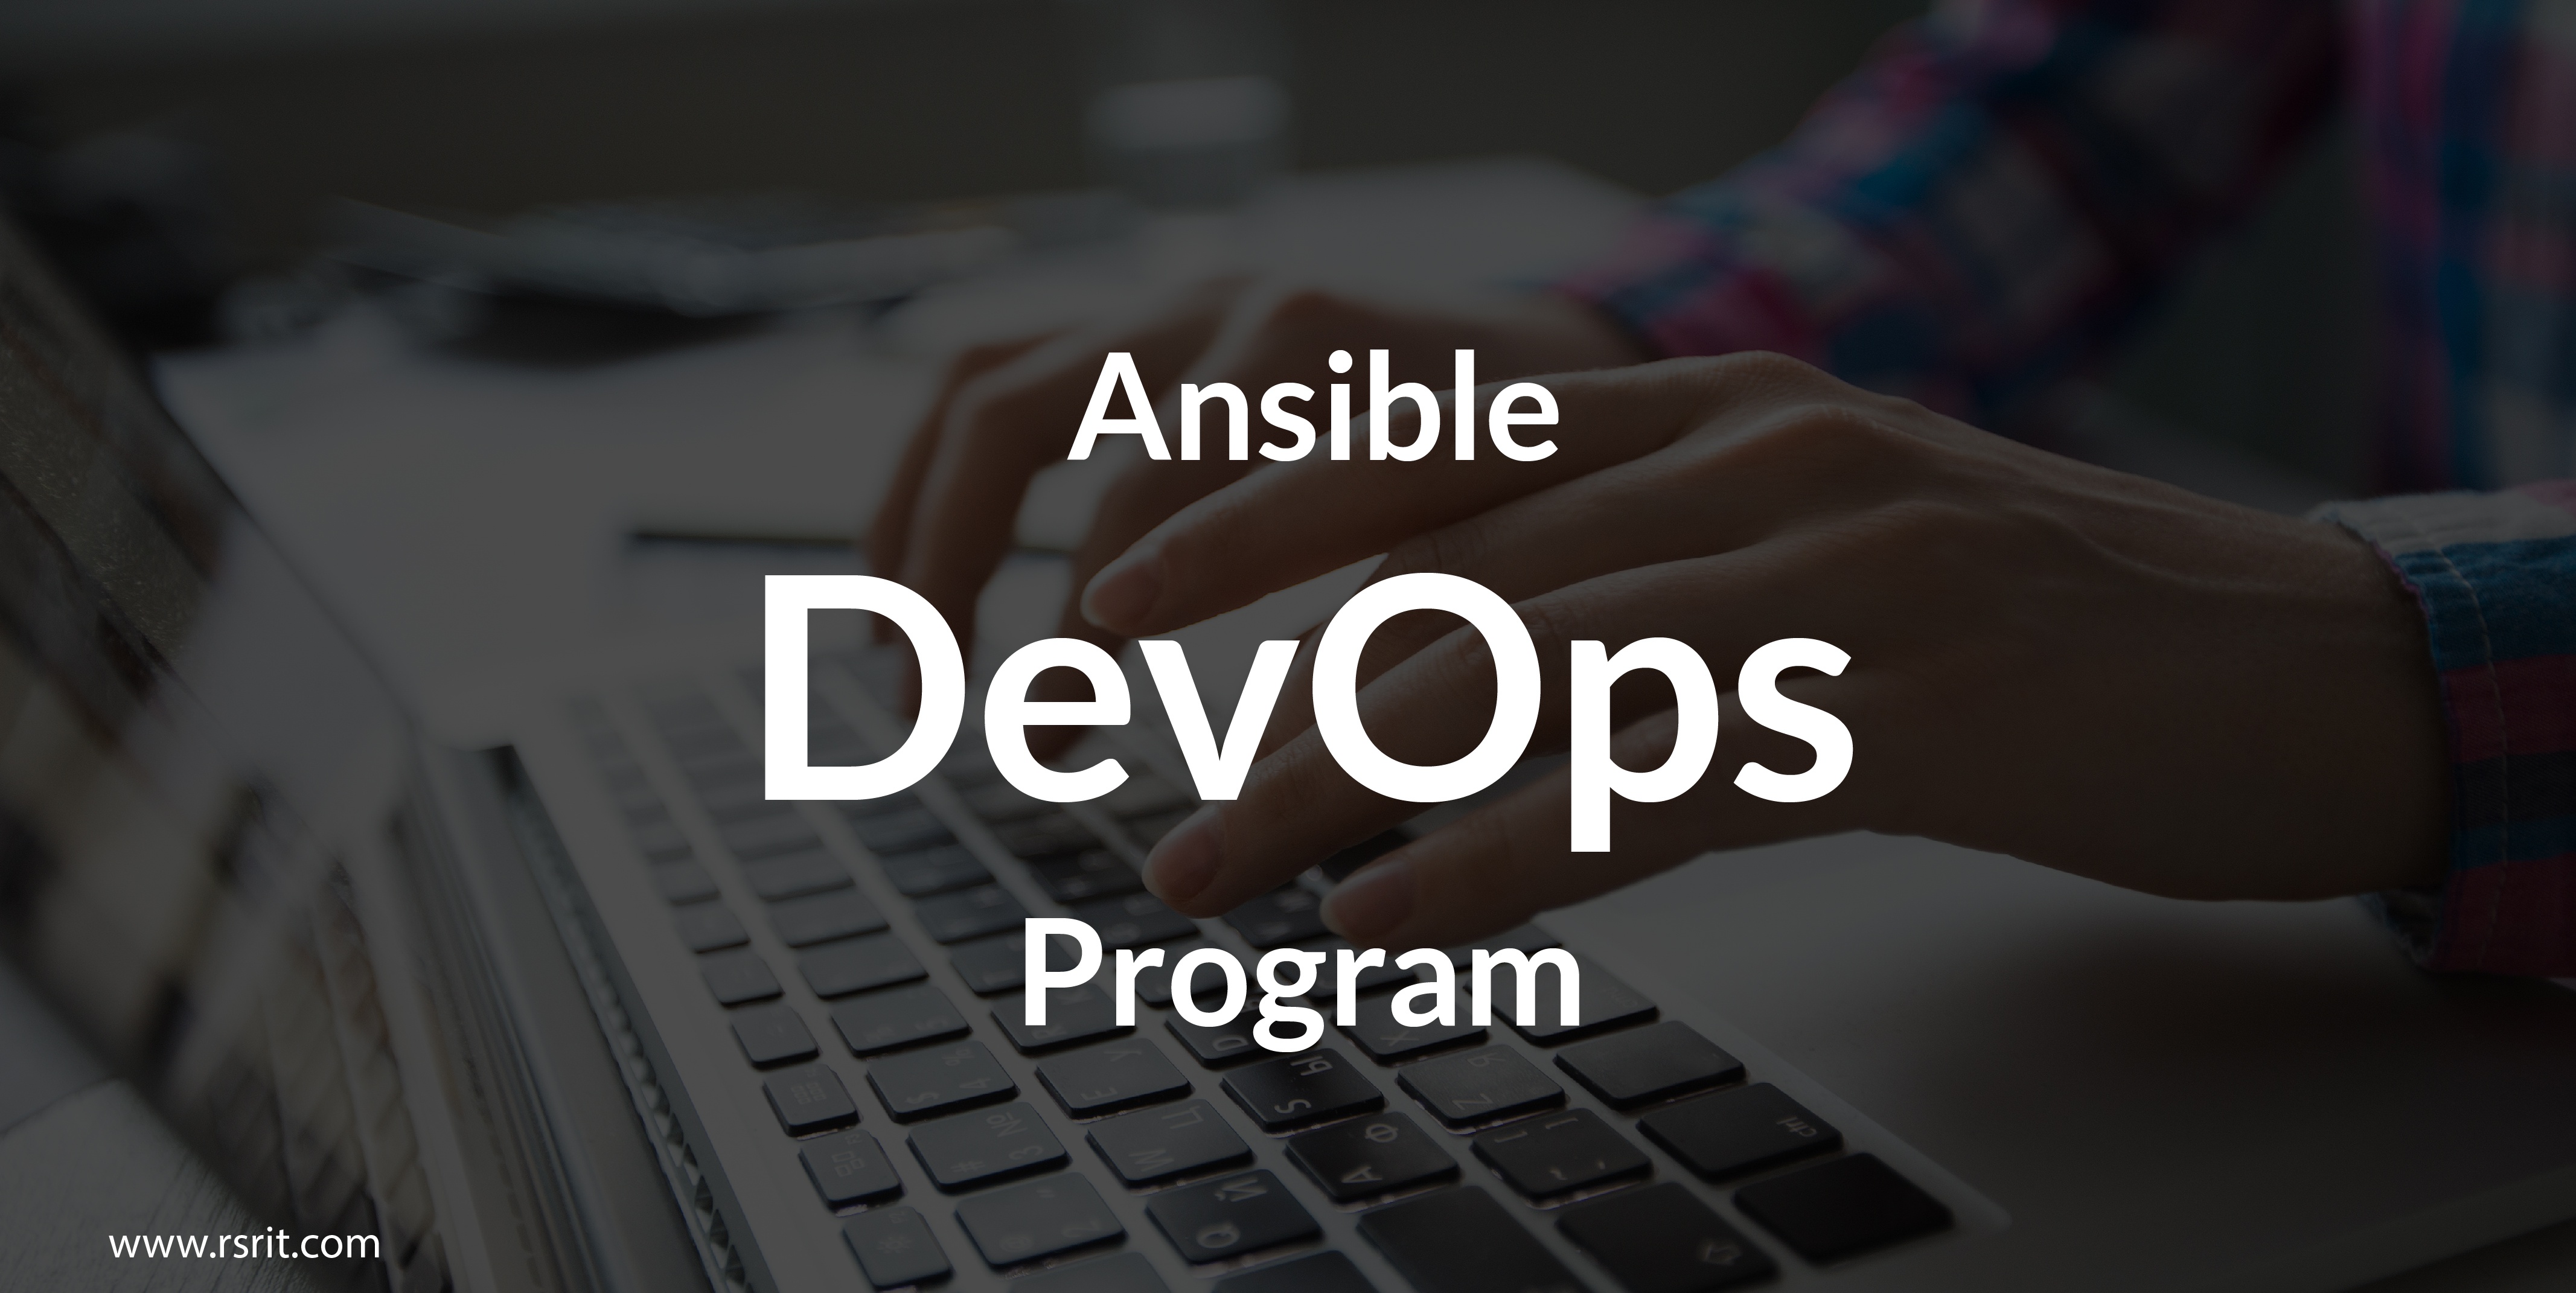 Ansible devops program gets upgraded